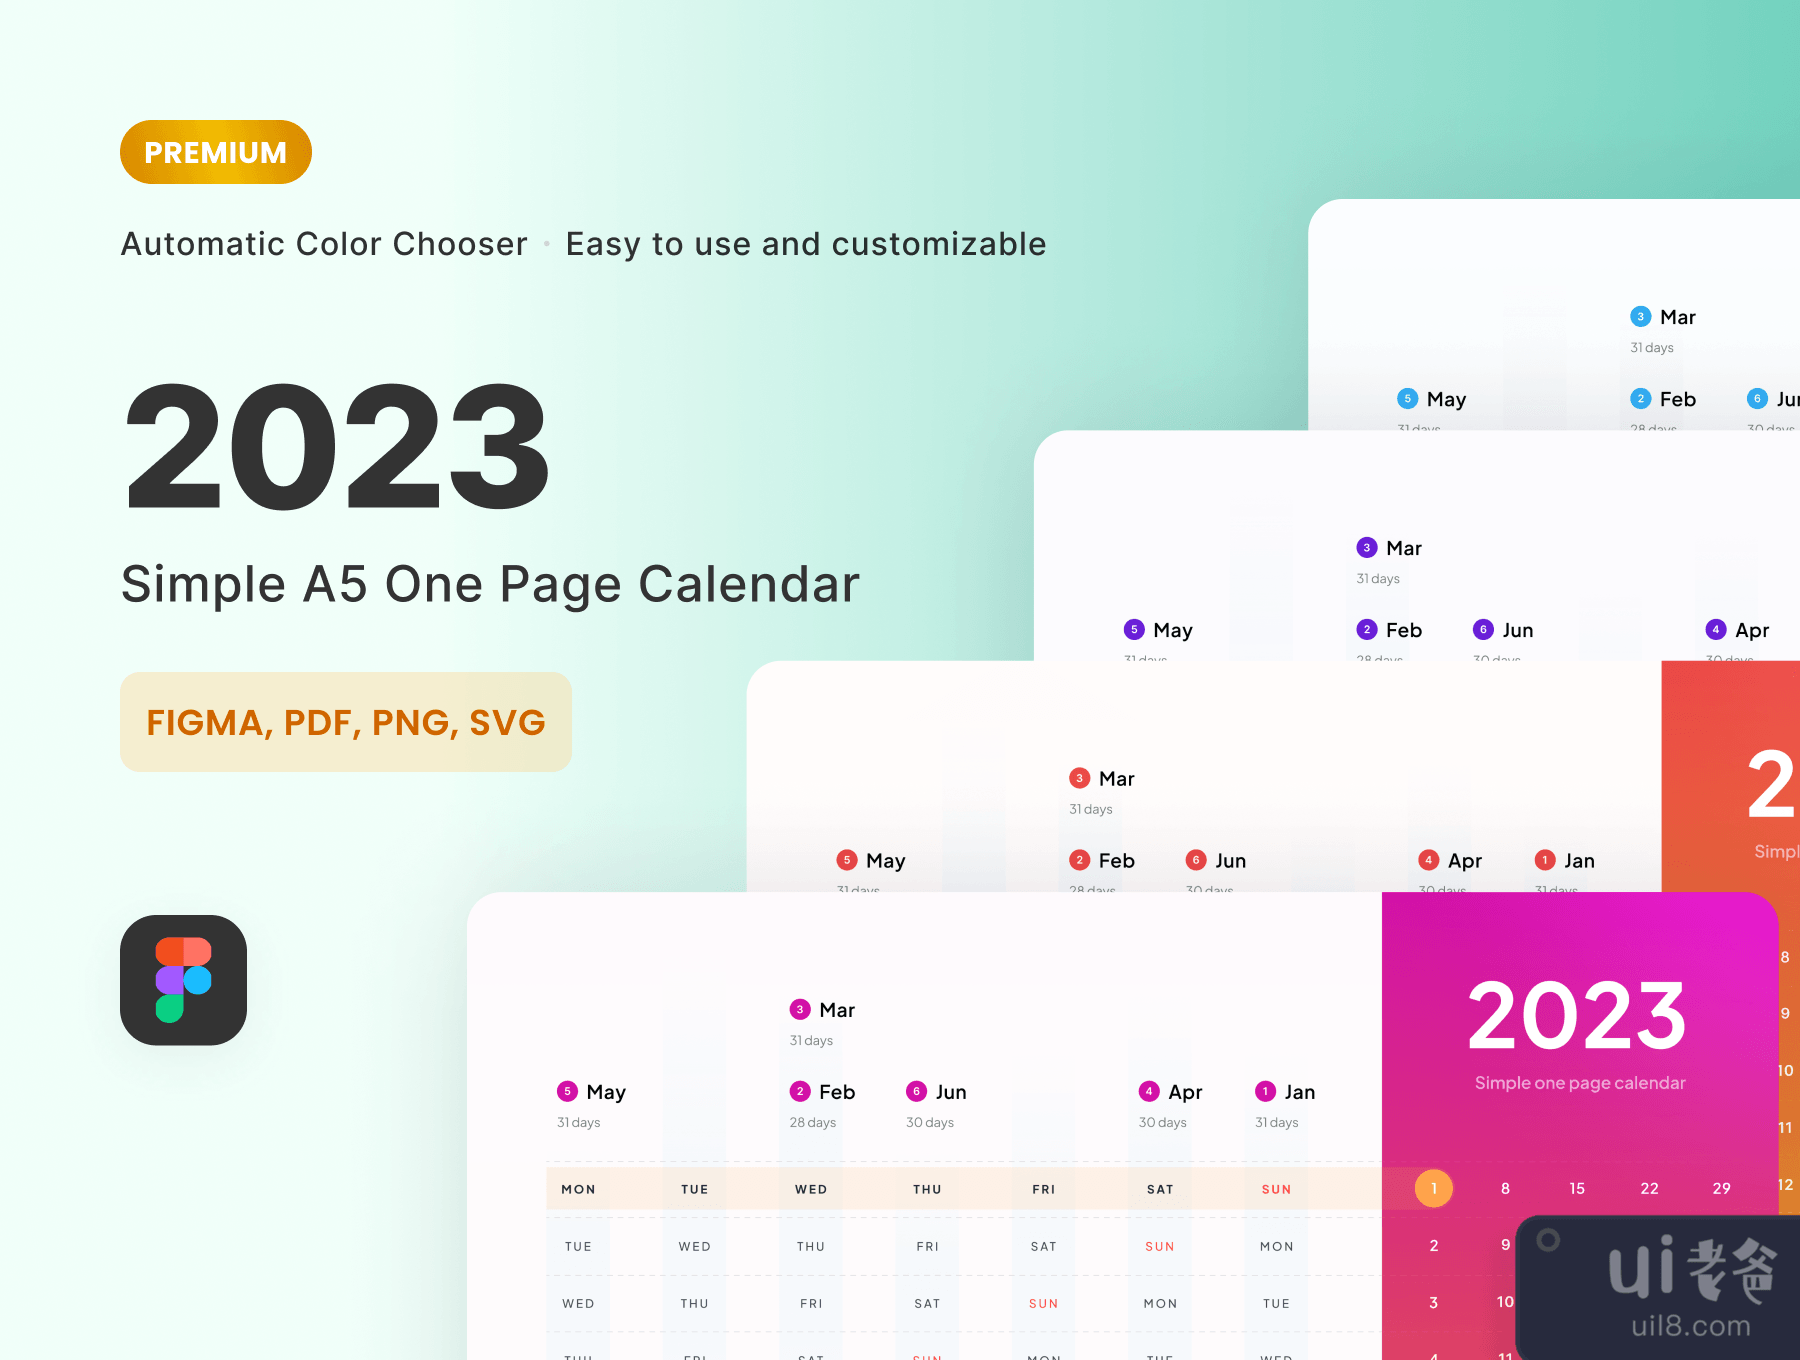 2023单页日历 - 高级版 (2023 One Page Calendar - PREMIUM Version)插图